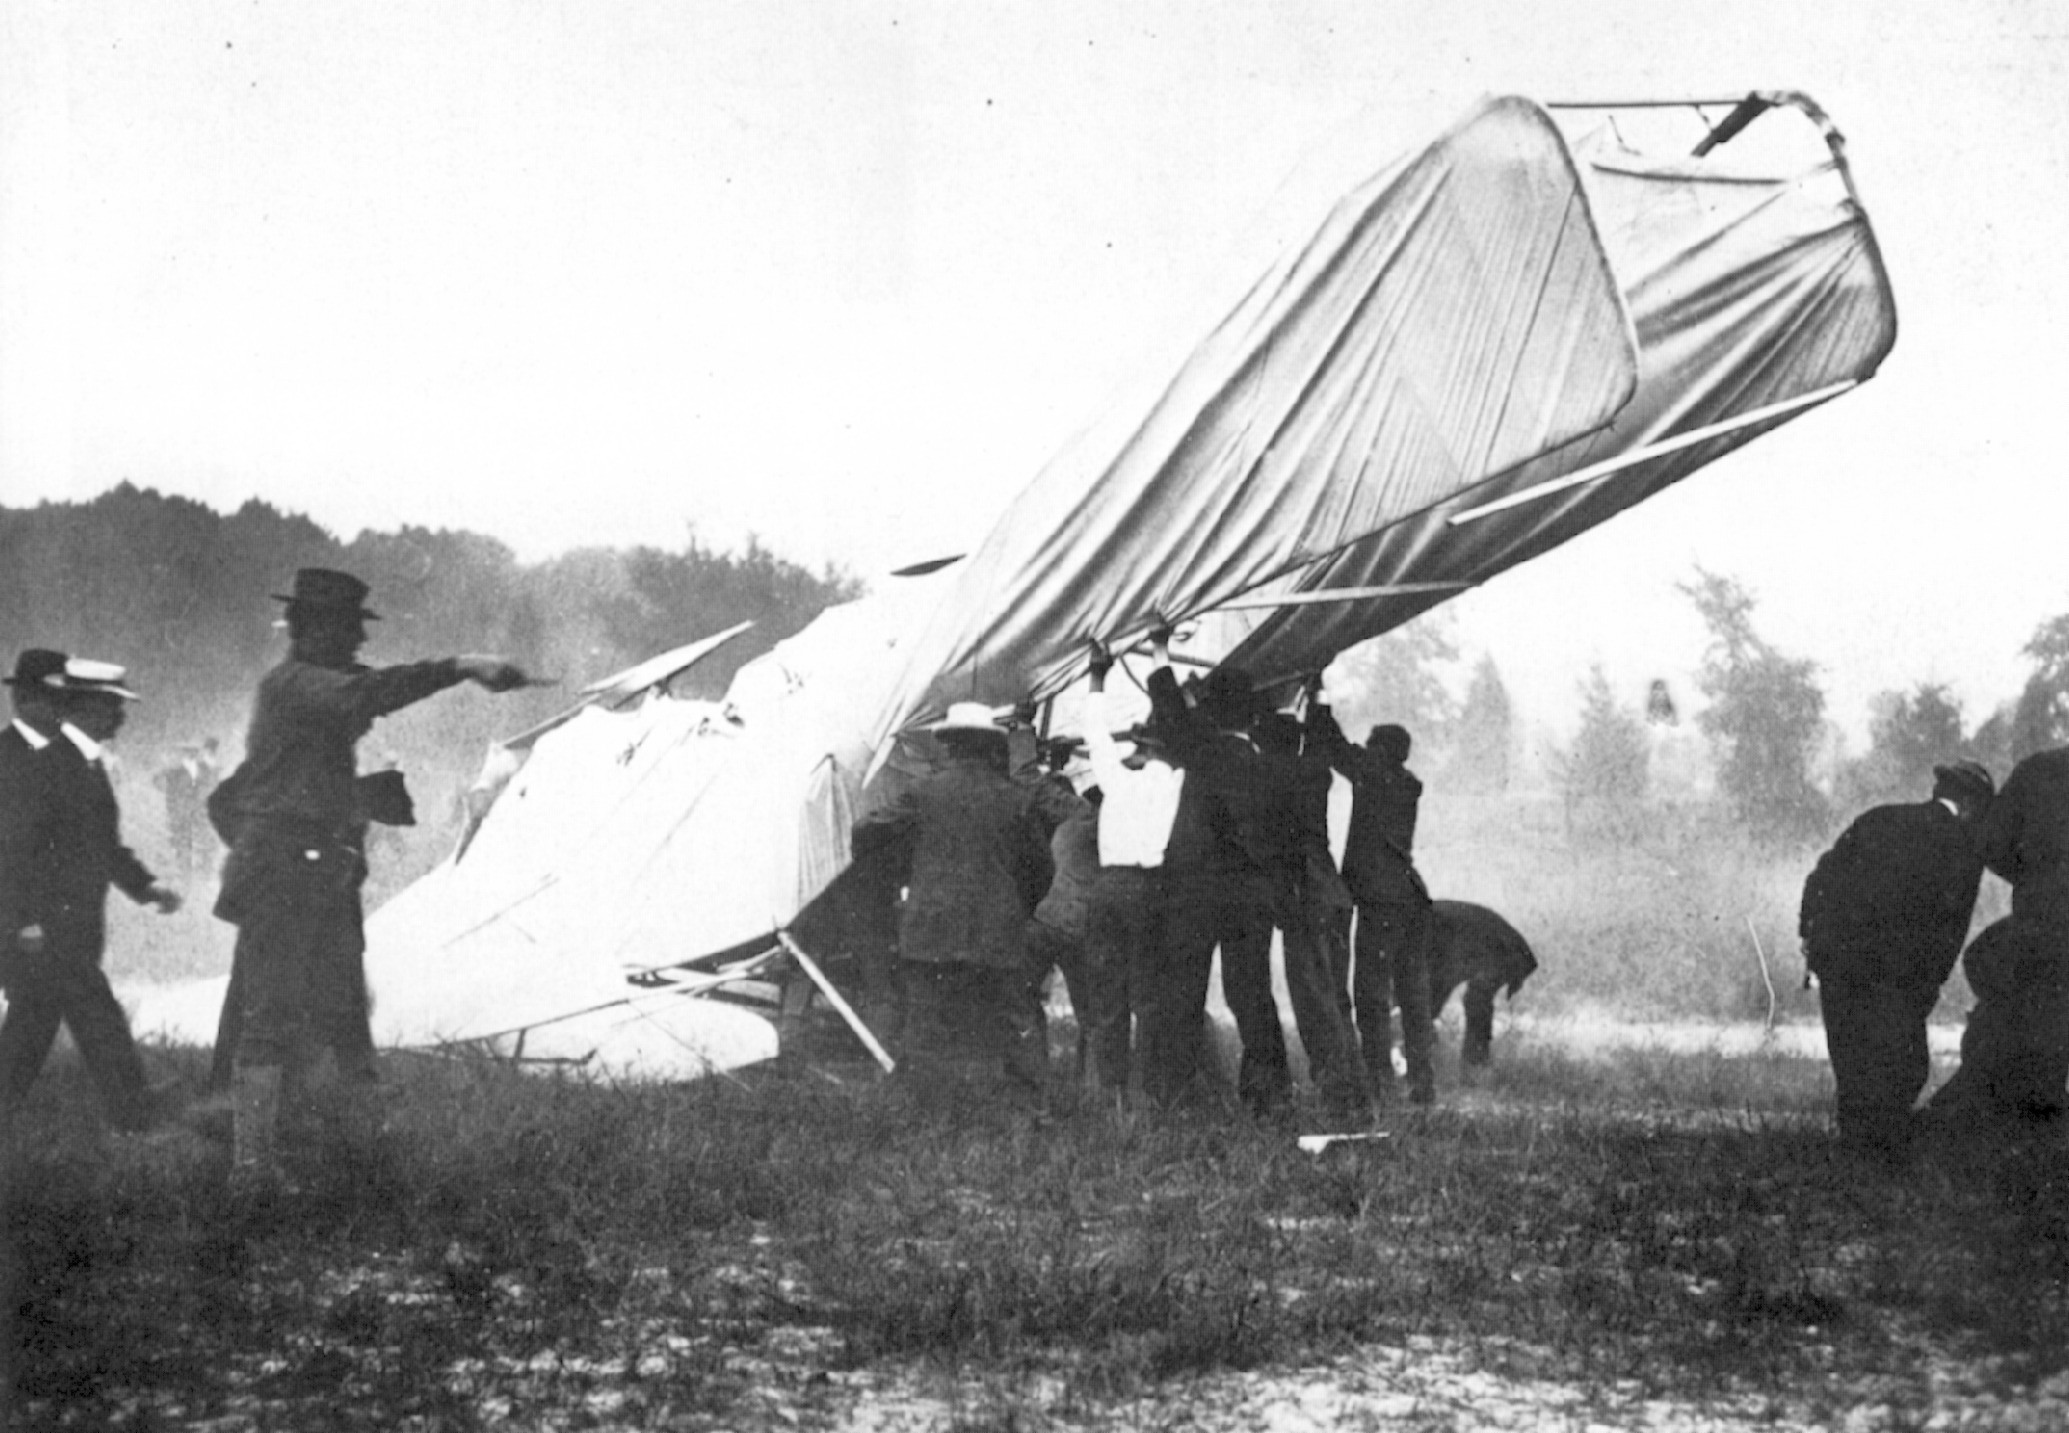 1908. Az első végzetes repülőgépbaleset, melyben Thomas Selfridge hadnagy  utasként életét vesztette. Orwill Wright mögött utazott a katonaság számára rendezett bemutatón..jpg